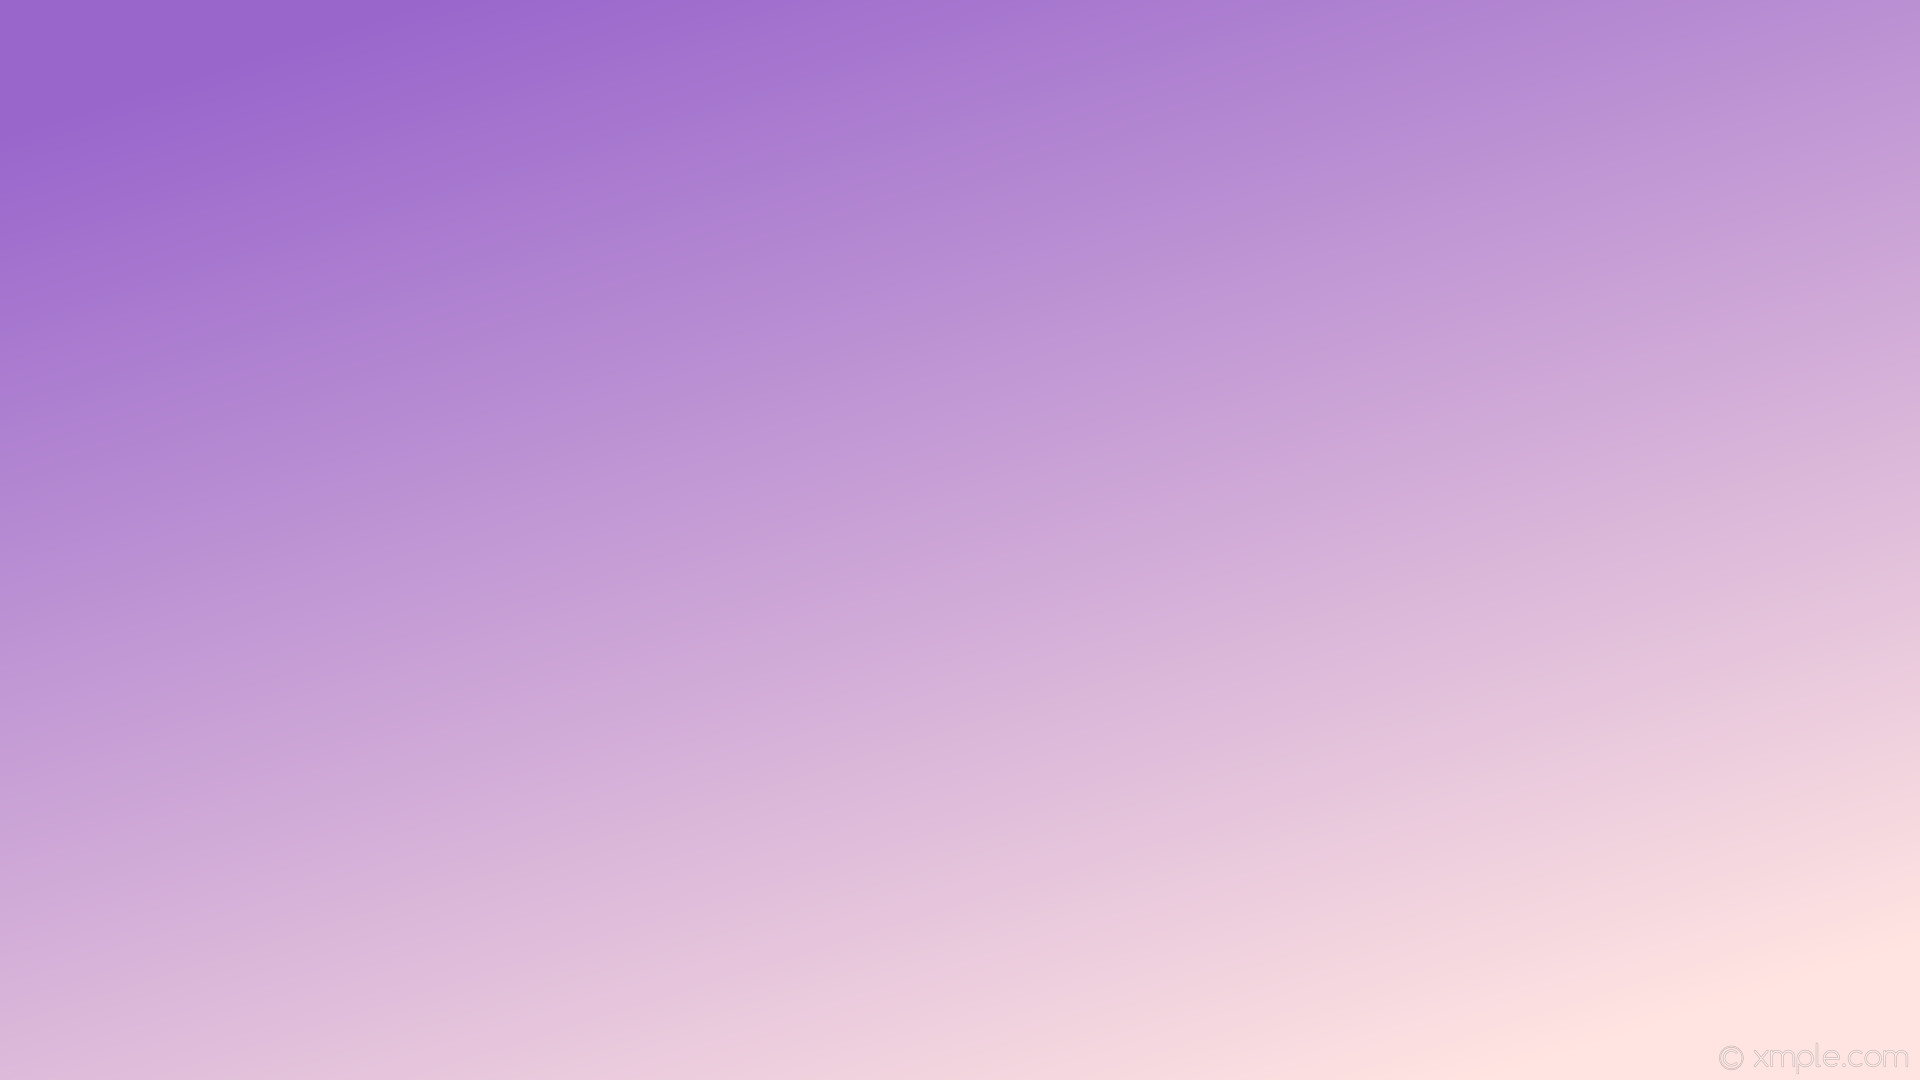 1920x1080 wallpaper gradient linear purple white misty rose amethyst #ffe4e1 #9966cc  315Â°